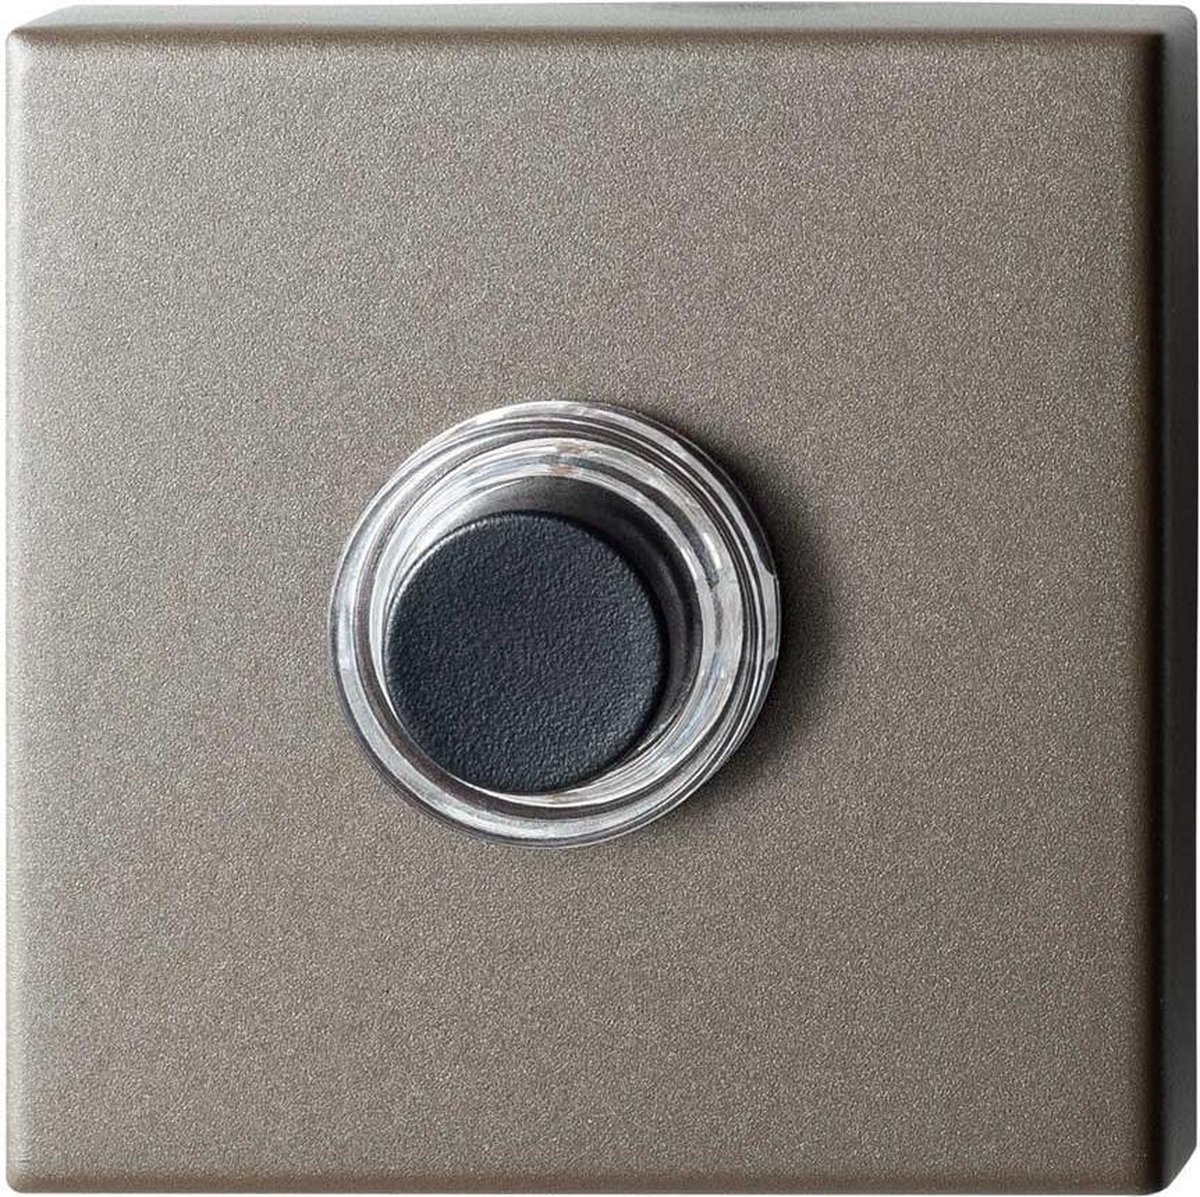 GPF9826.A3.1102 deurbel met zwarte button vierkant 50x50x8 mm Mocca blend